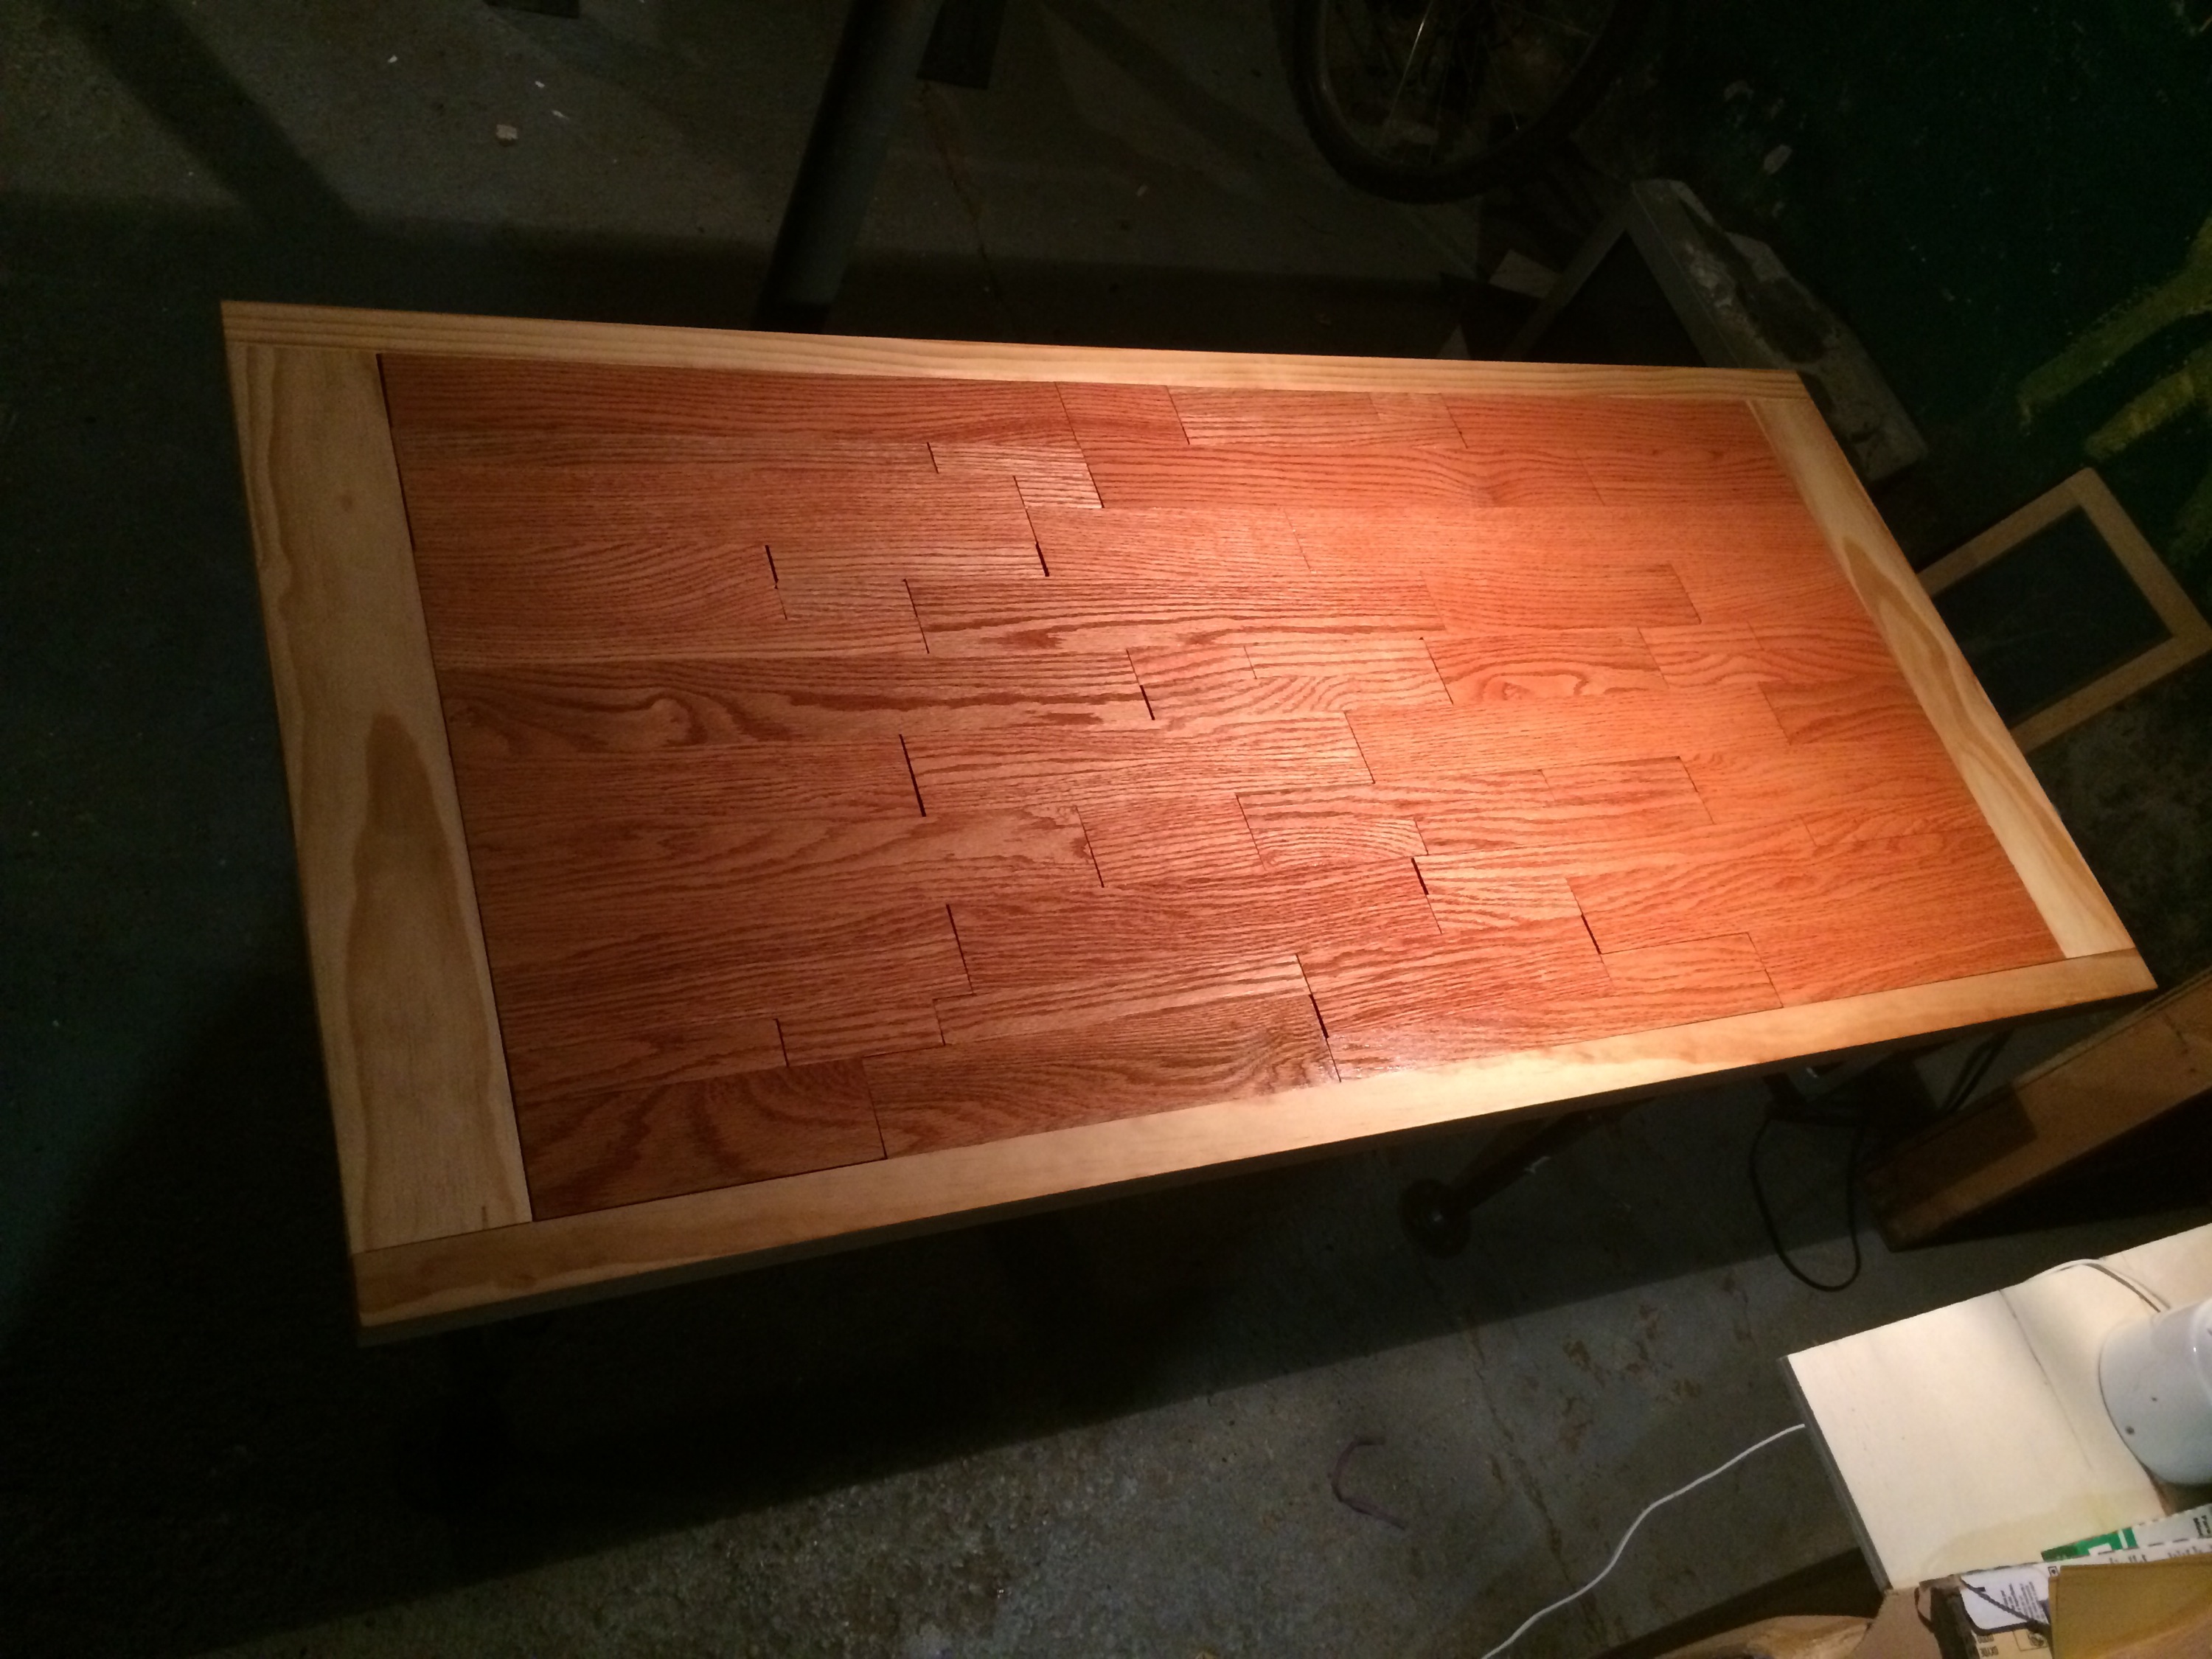 building an oak desk with pine trim